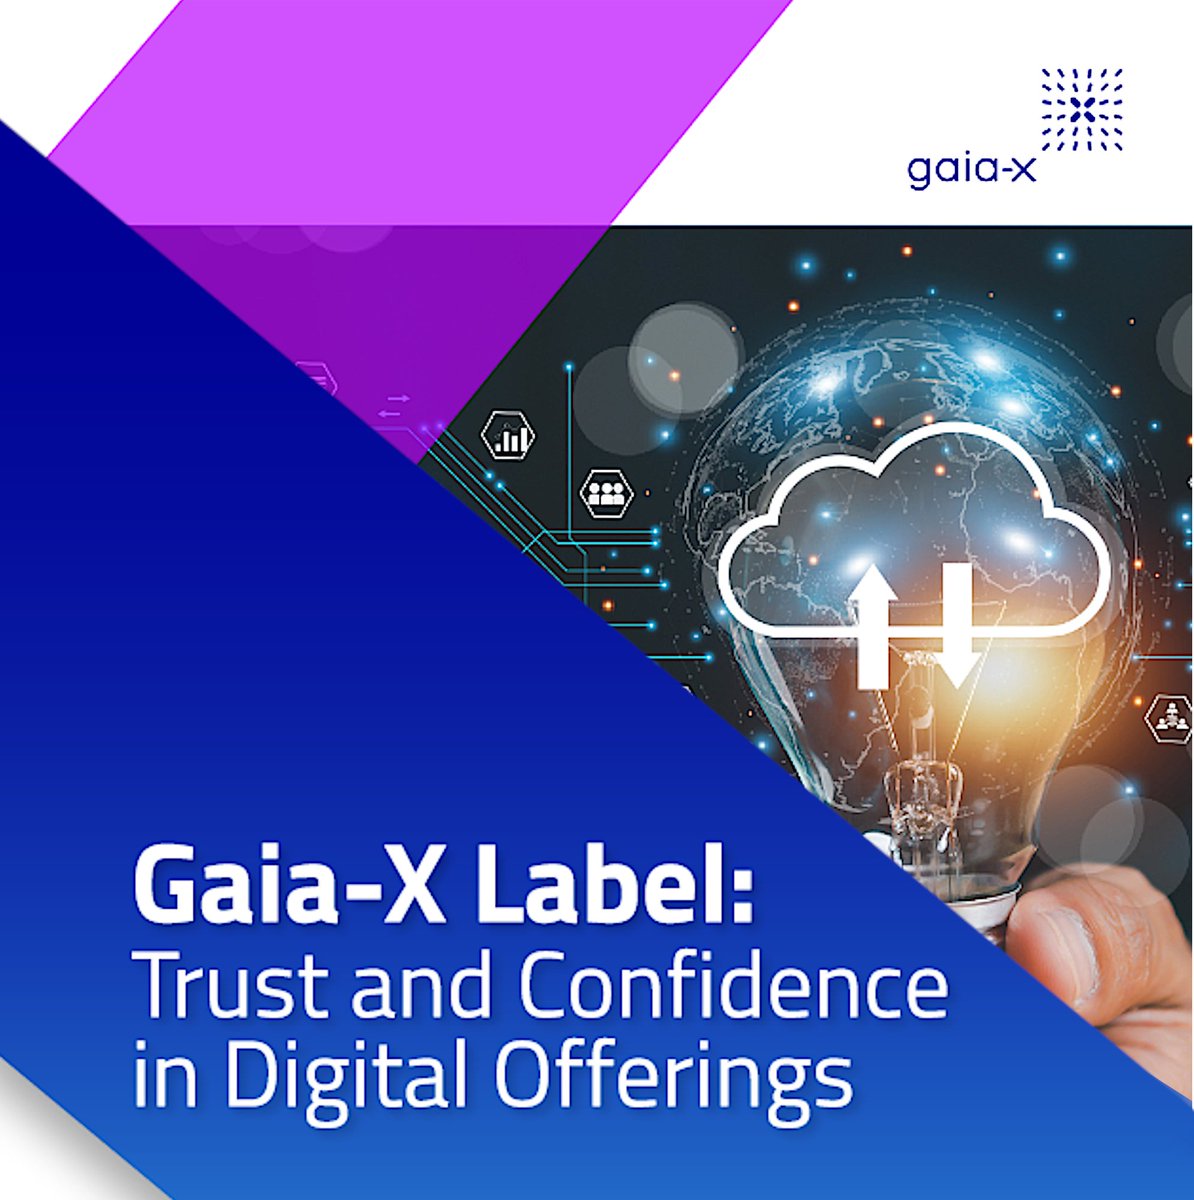 Vertrauen ist ein wichtiger Motor für die digitale Transformation und die Entwicklung der Datenökonomie. Künftig helfen die #GaiaX Label dabei, vertrauenswürdige und sichere digitale Services besser zu erkennen! Mehr Infos unter🛡 gaia-x.eu/wp-content/upl…